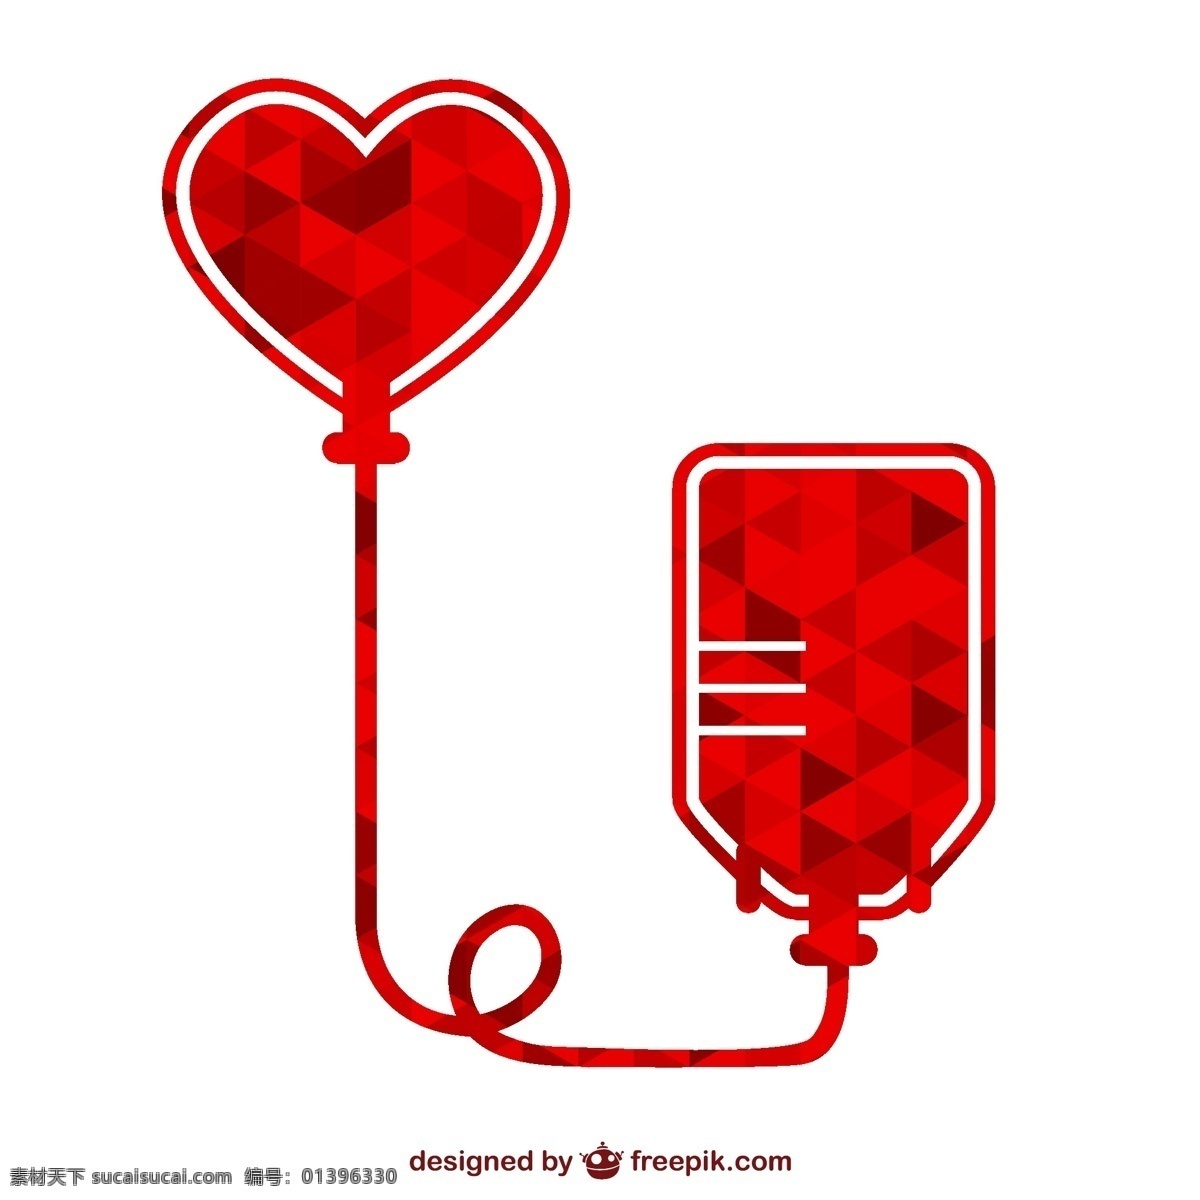 创意献血 标识矢量 献血袋 爱心 标志 献血 公益 矢量图 ai格式 图标 标签 标志图标 其他图标 白色